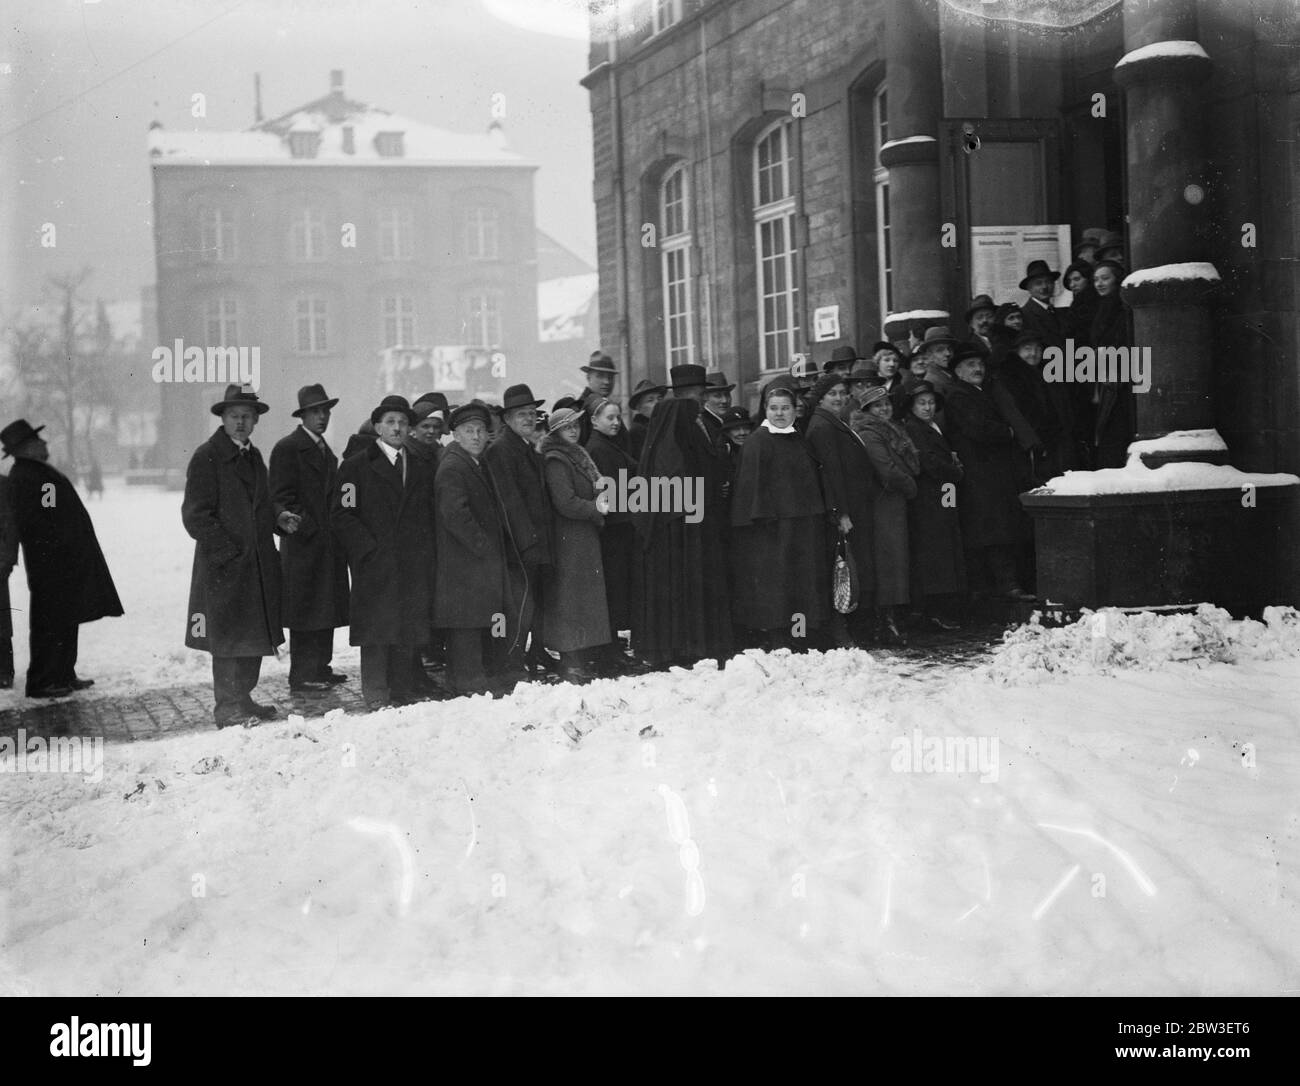 Il plebiscito di Saar . Gli elettori attendono nel freddo e nella neve dall'alba all'apertura delle cabine elettorali . 13 gennaio 1935 Foto Stock